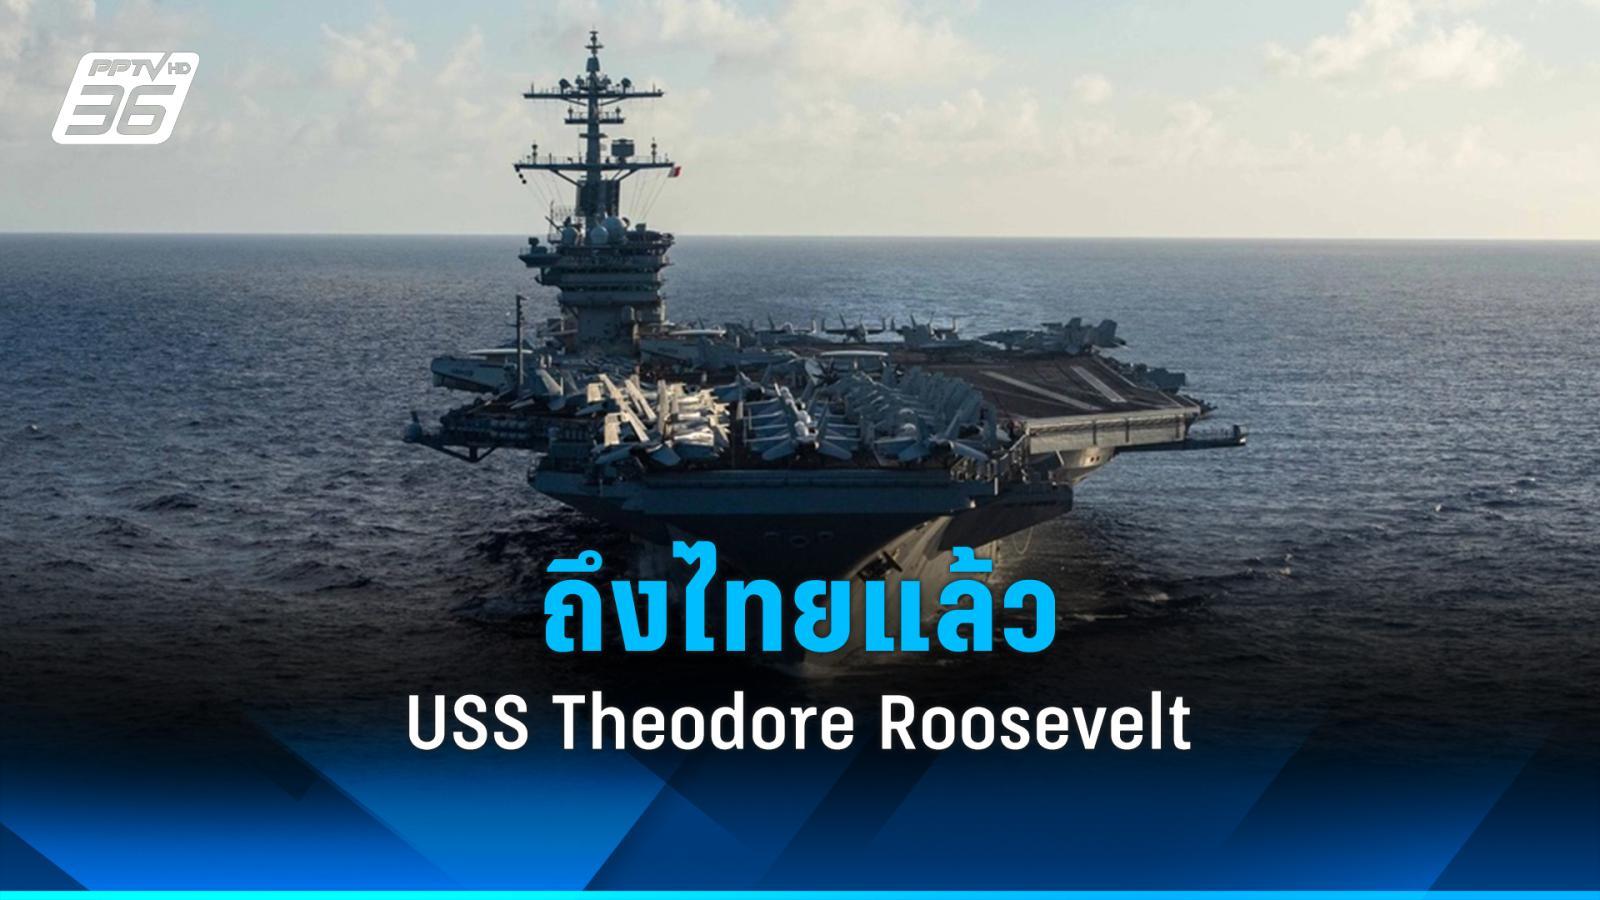 เรือบรรทุกเครื่องบิน uss theodore roosevelt ถึงไทยแล้ว ทหารสหรัฐฯ ขึ้นฝั่งท่องเที่ยวเพลิดเพลินกับซอฟต์พาวเวอร์